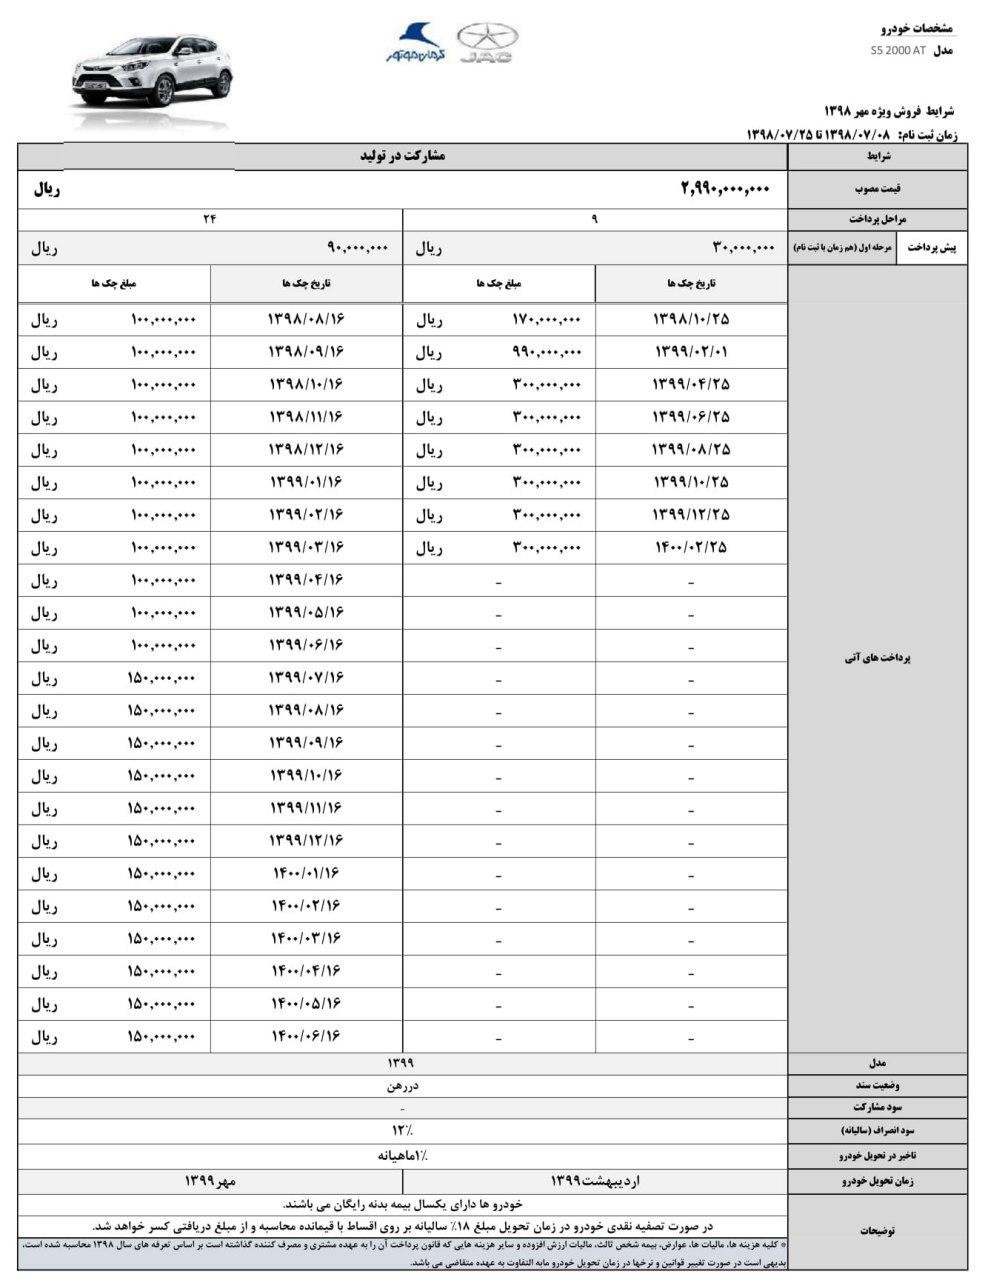 جدول طرح فروش اقساطی جک S5 اتوماتیک ویژه مهرماه 98.jpg